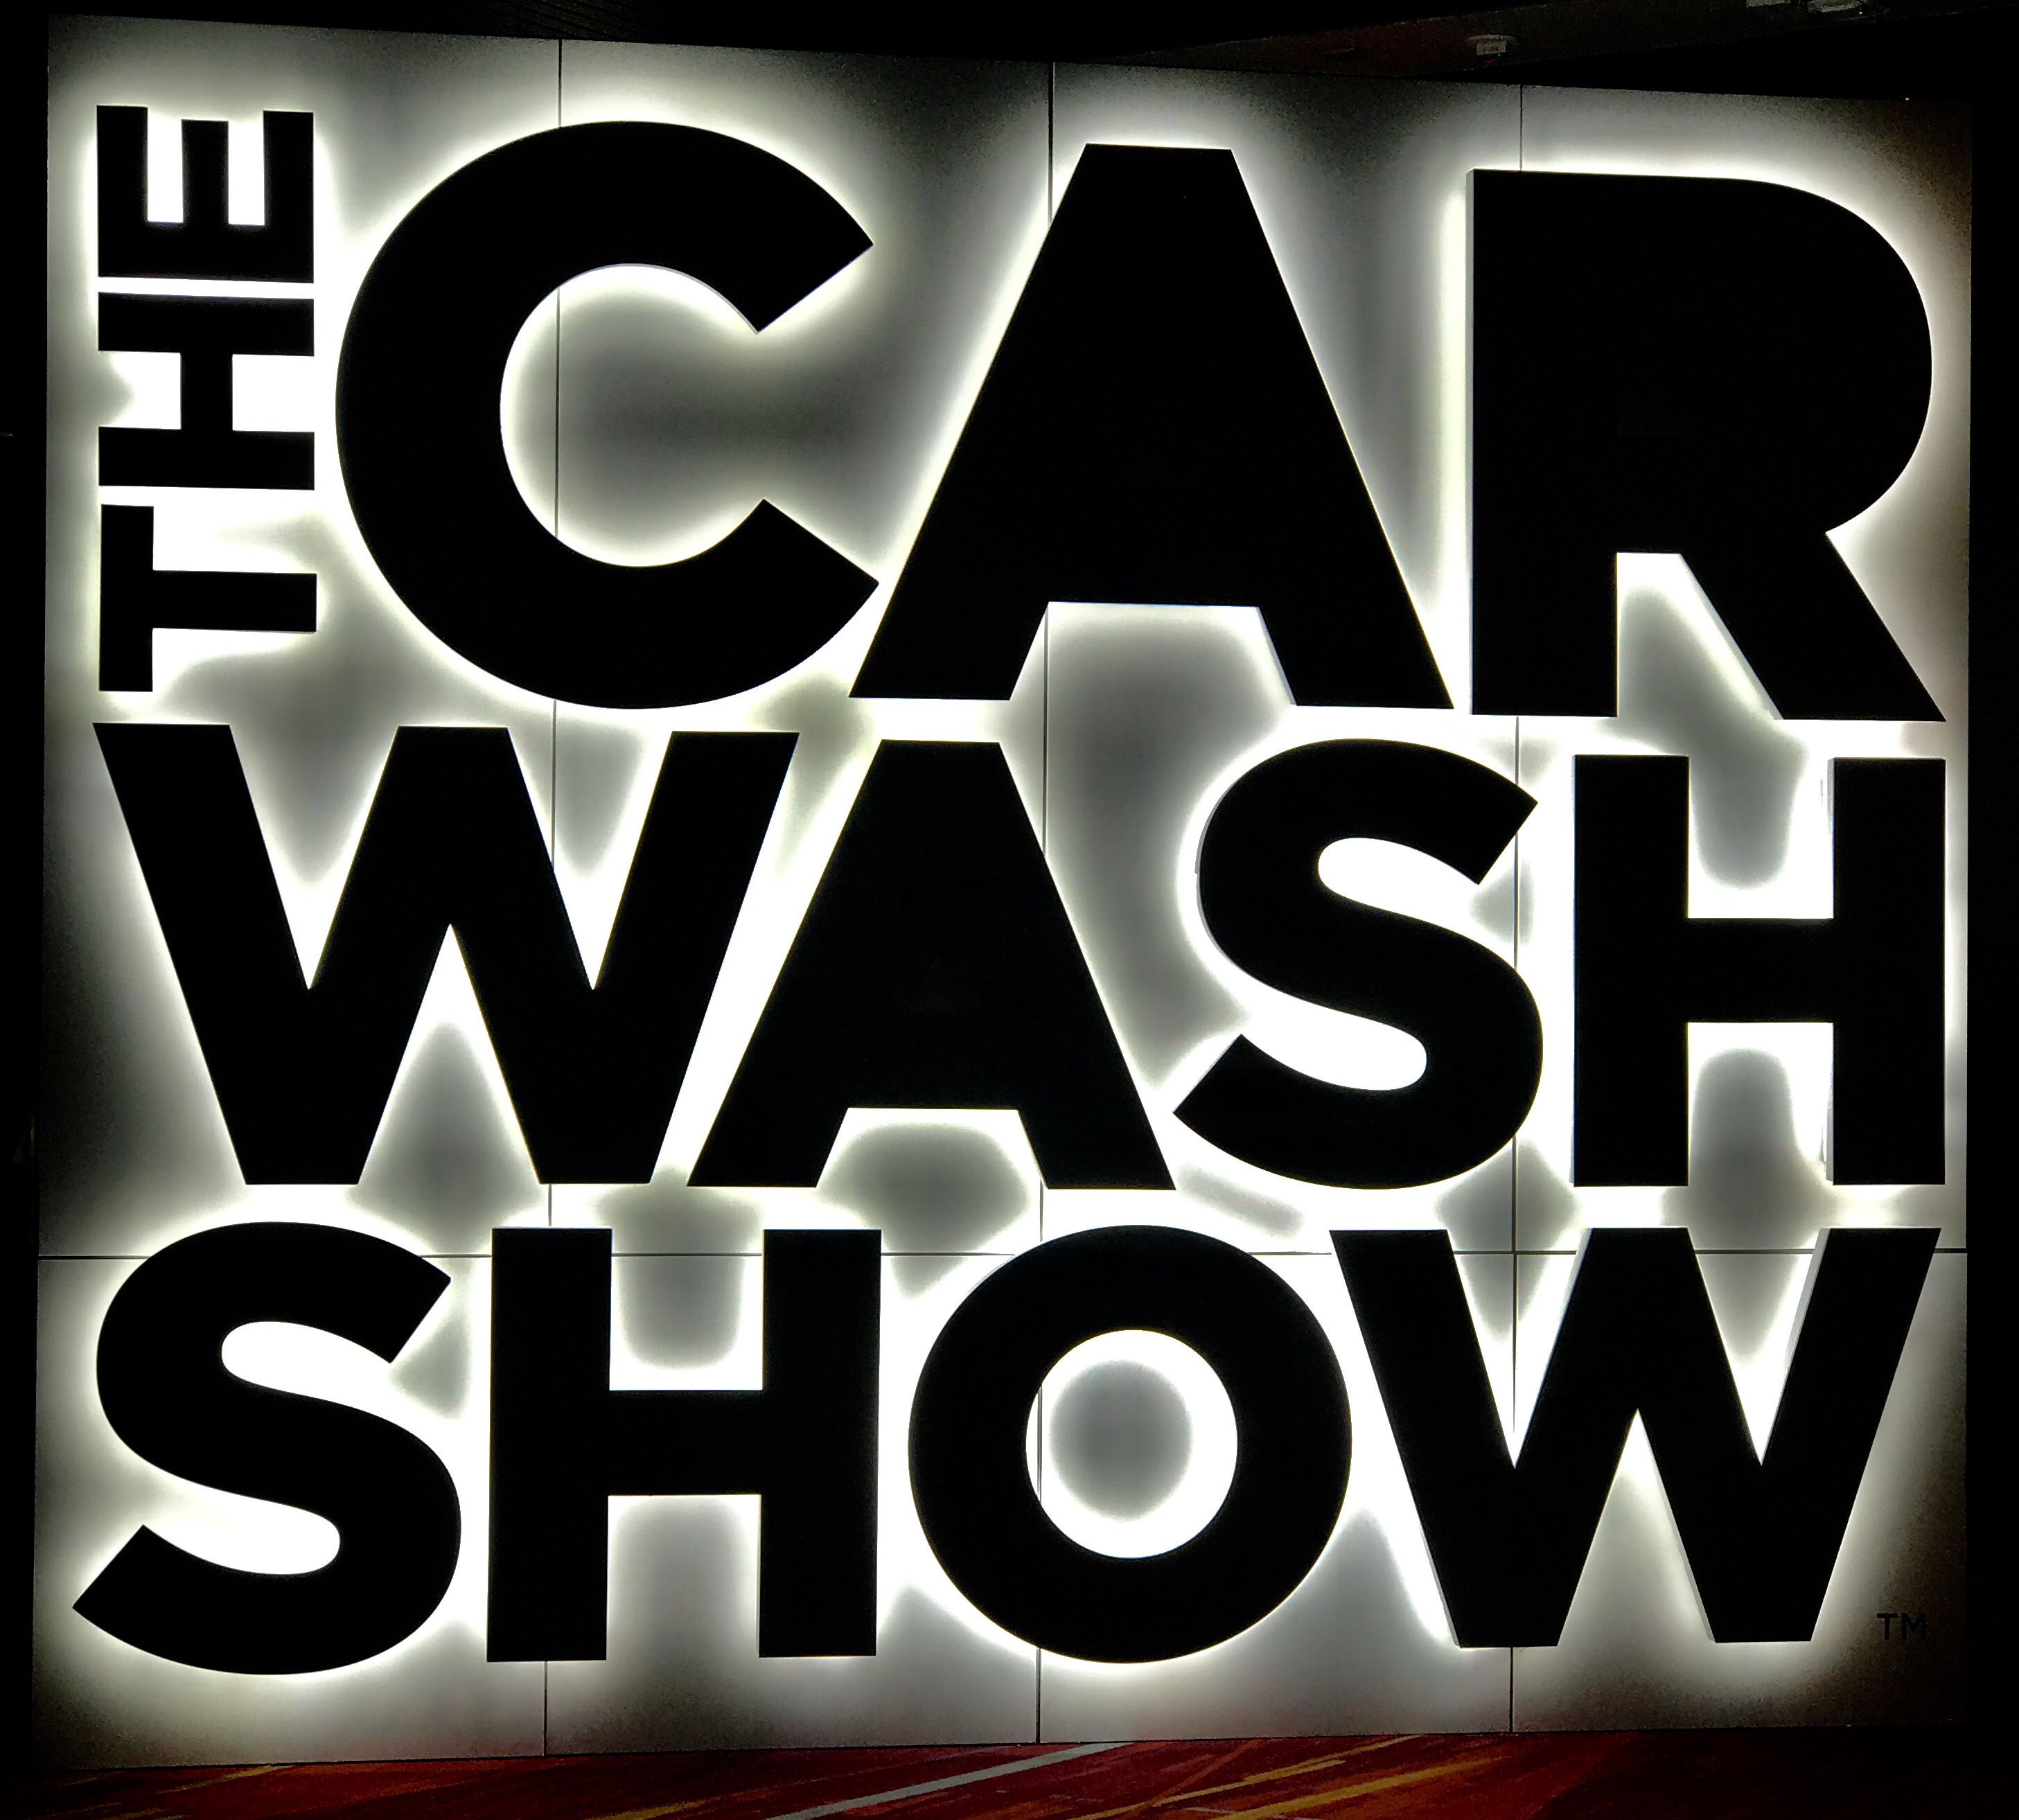 The Car Wash Show 2018